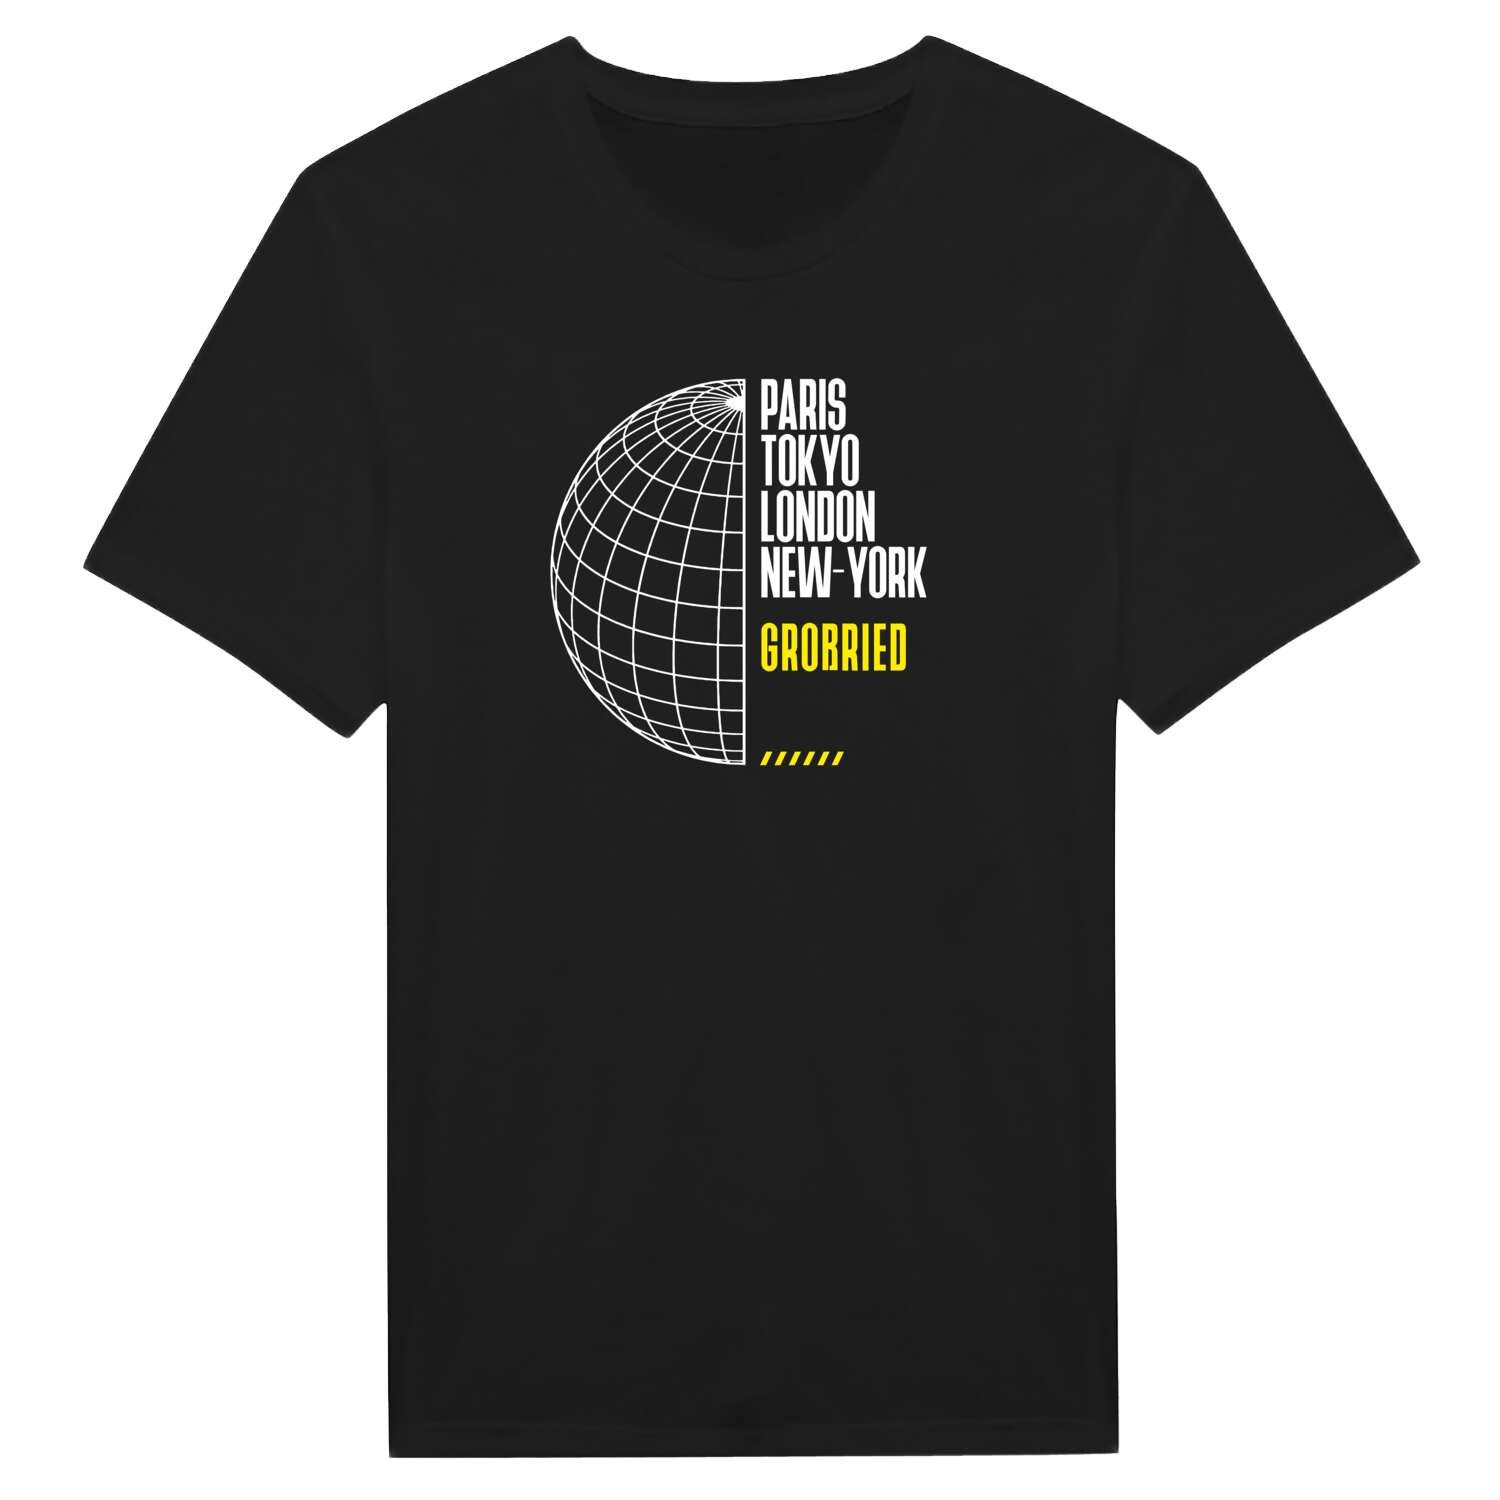 Großried T-Shirt »Paris Tokyo London«